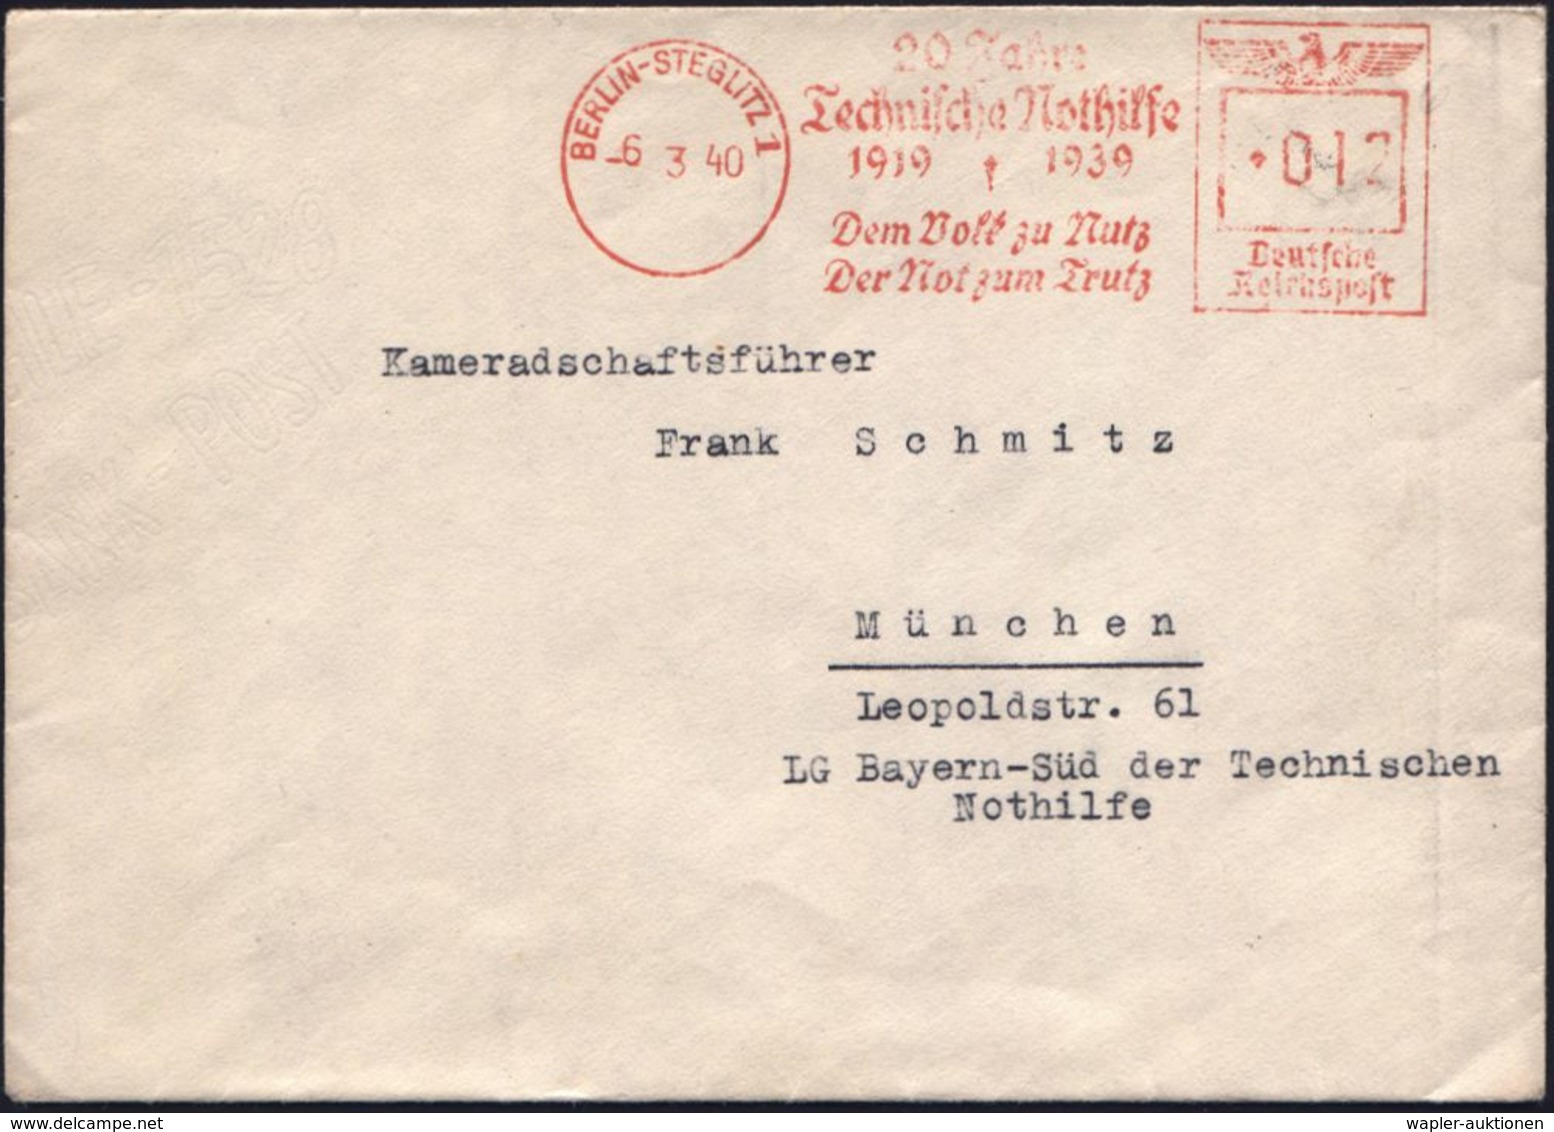 RETTUNGSWESEN / TECHN. HILFSWERKE (THW) : BERLIN-STEGLITZ1/ 20 Jahre/ Technische Nothilfe/ 1919 1939/ Dem Volk Zu Nutz/  - Médecine